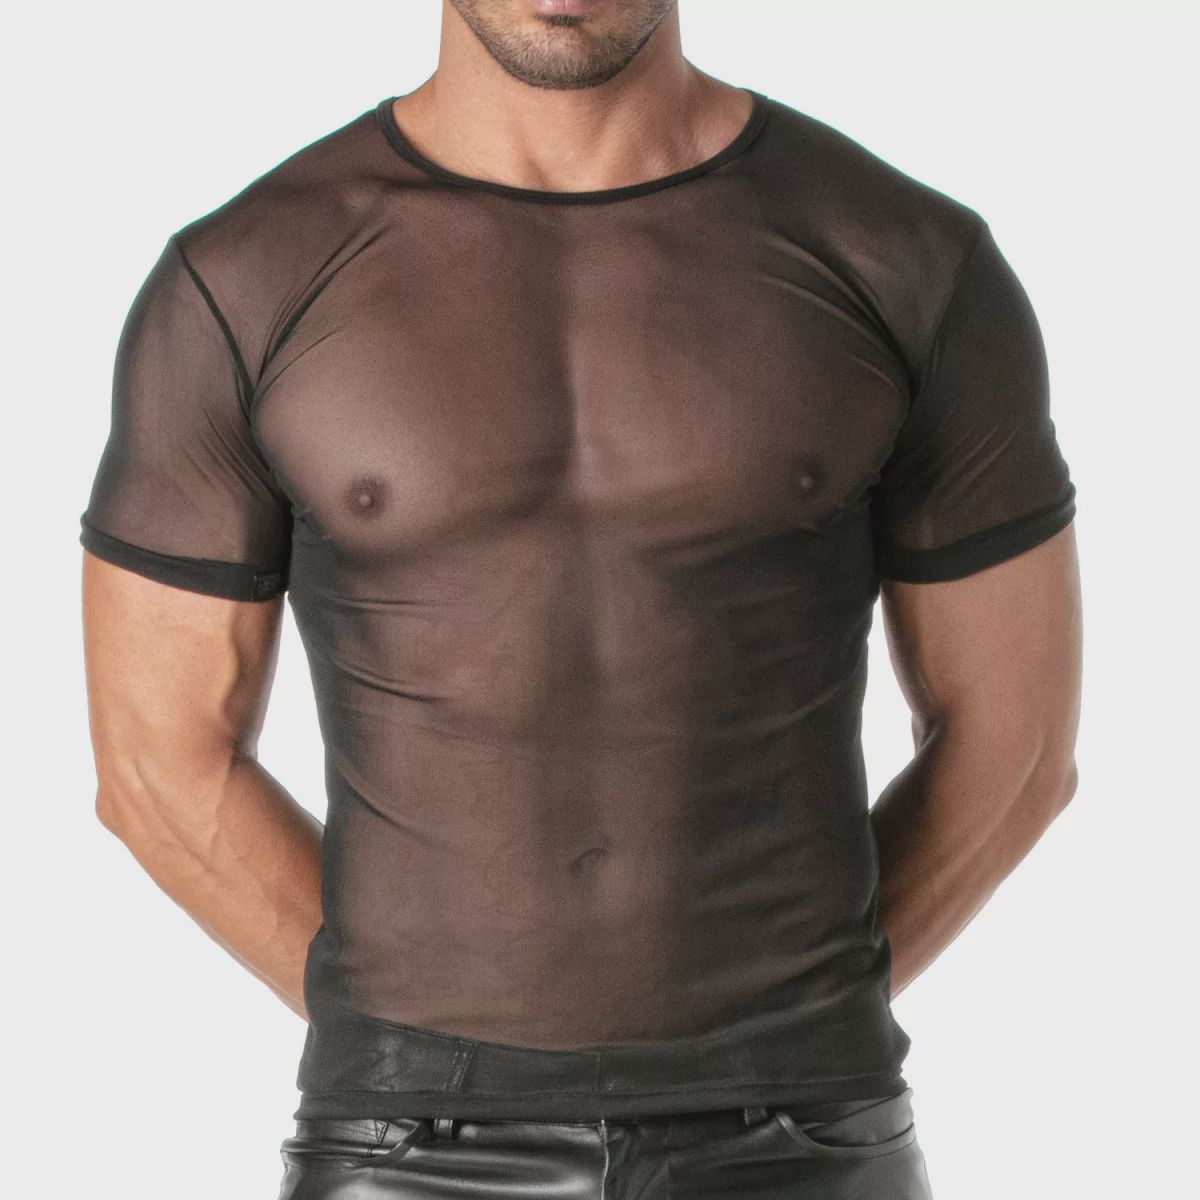 mesh-t-shirt-for-men.jpg